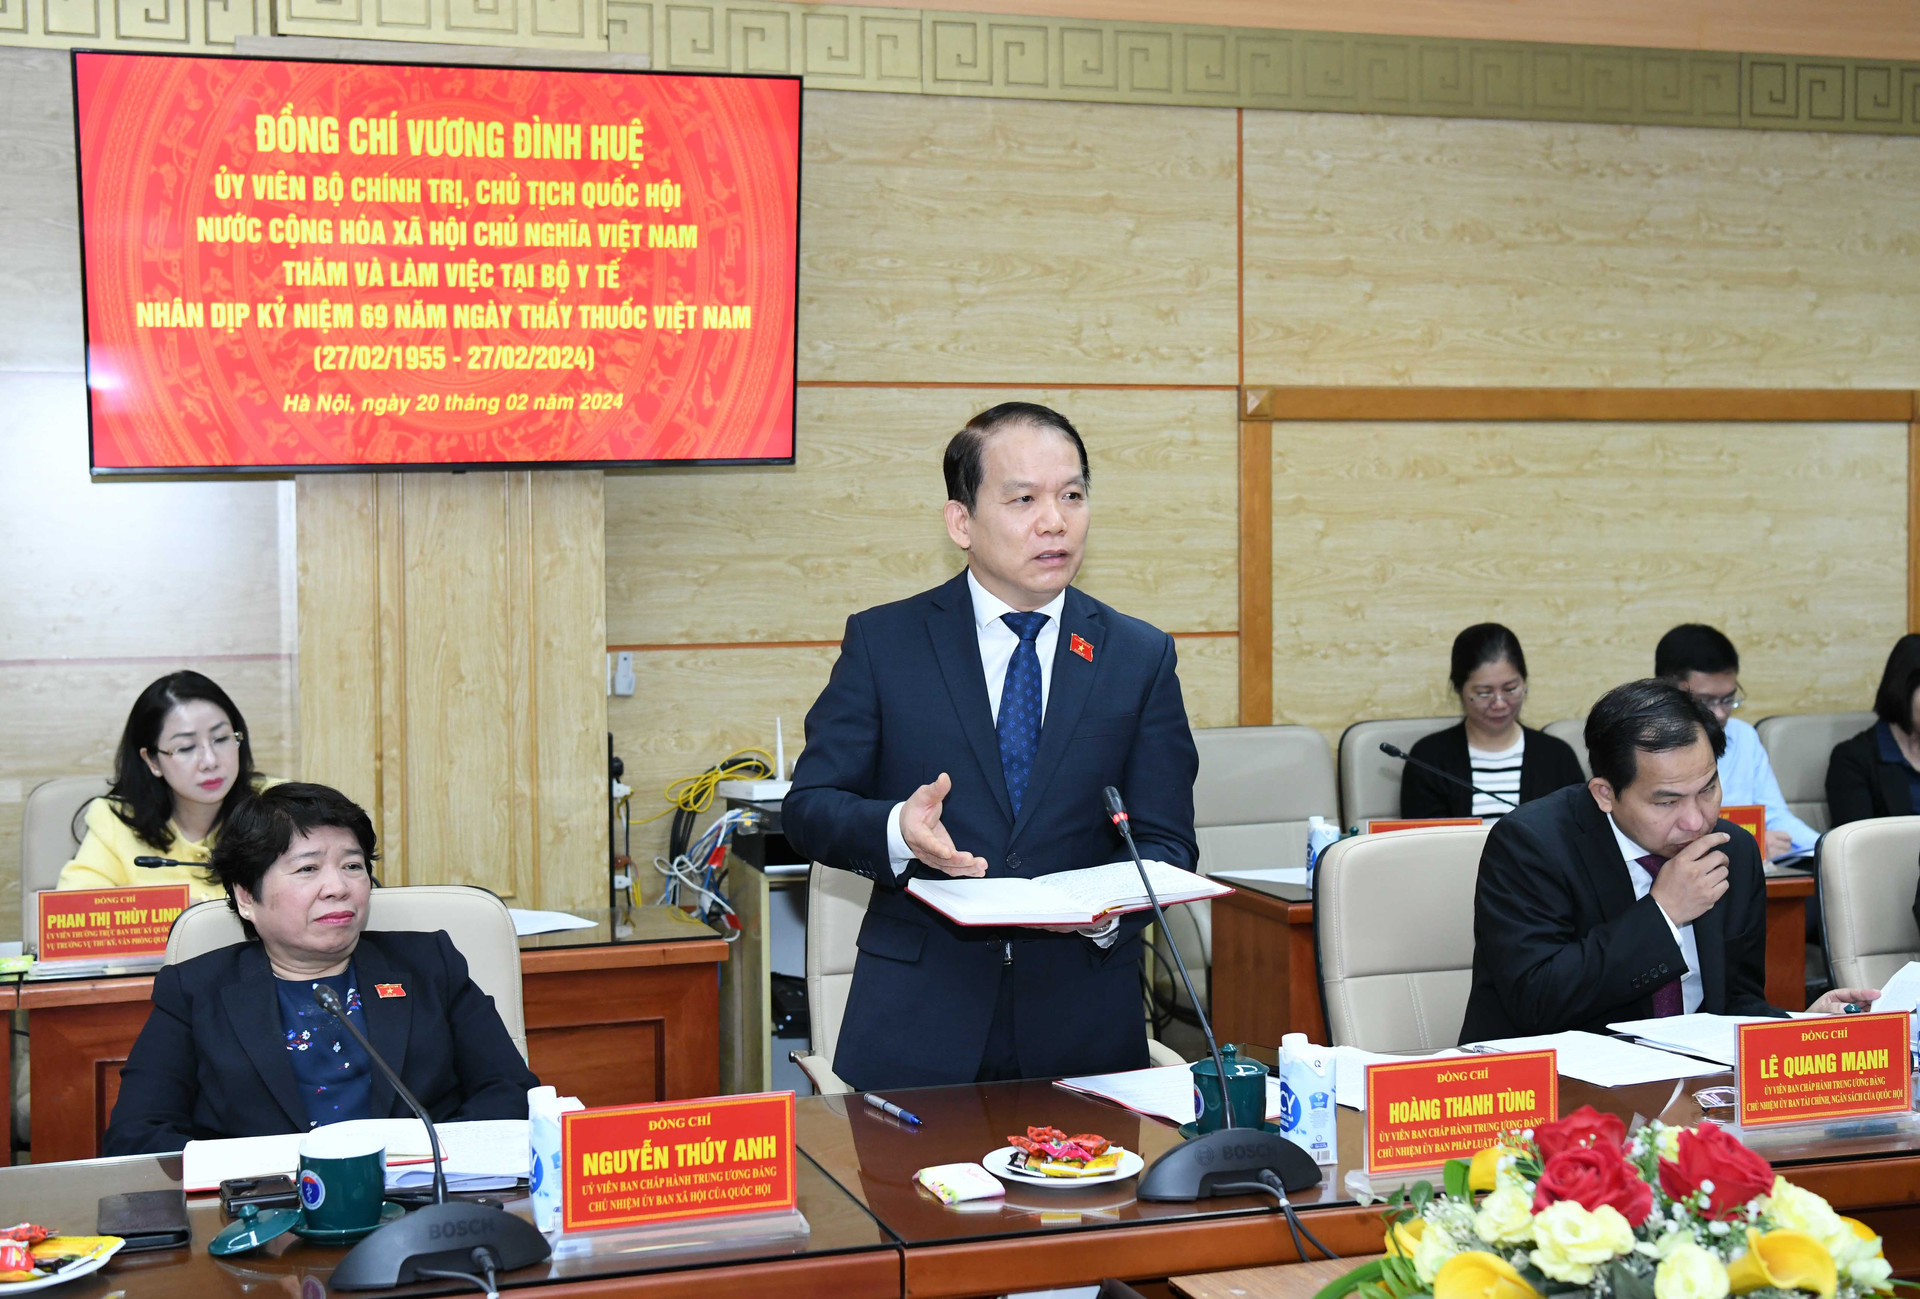 Chủ tịch Quốc hội Vương Đình Huệ: Chăm sóc sức khoẻ nhân dân là ưu tiên đặc biệt của Đảng và Nhà nước ta